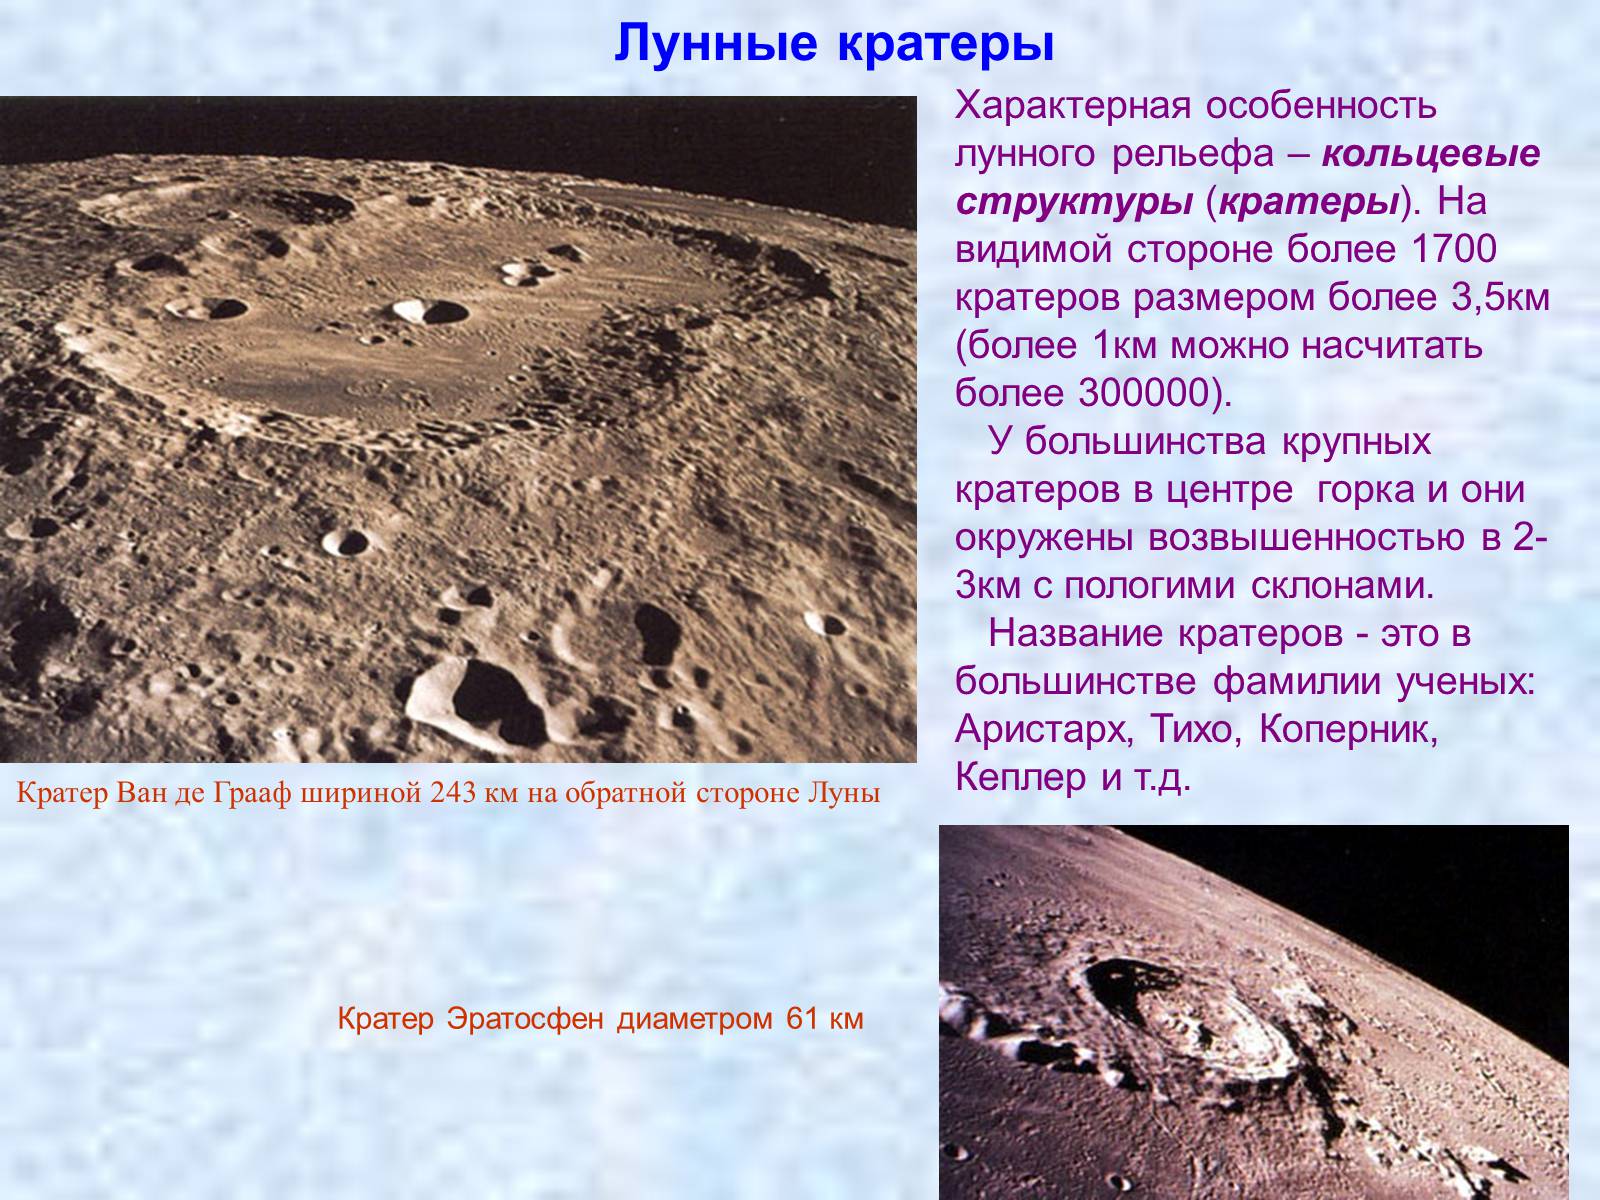 Что является образованием кратеров на луне. Поверхность Луны кратеры. Луна рельеф поверхности. Лунного рельефа – кольцевые структуры (кратеры).. Размеры кратеров на Луне.